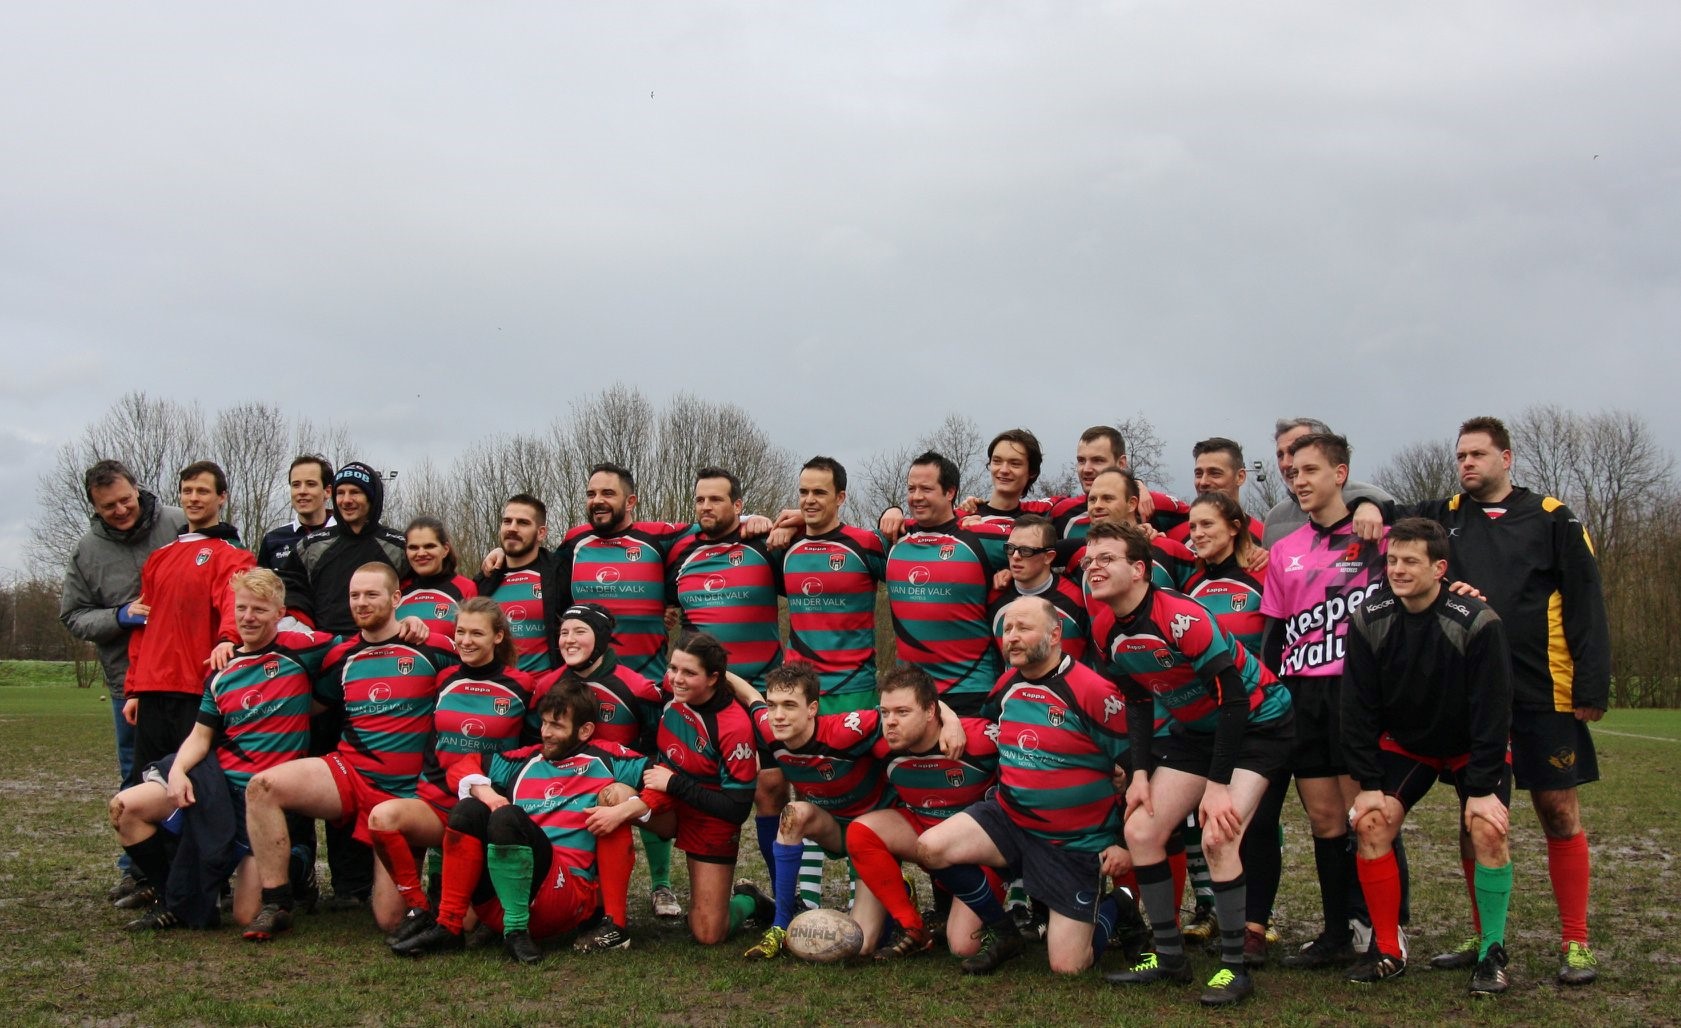 Afbeelding van een poserende MIXAR ploeg van Rugby Vlaanderen